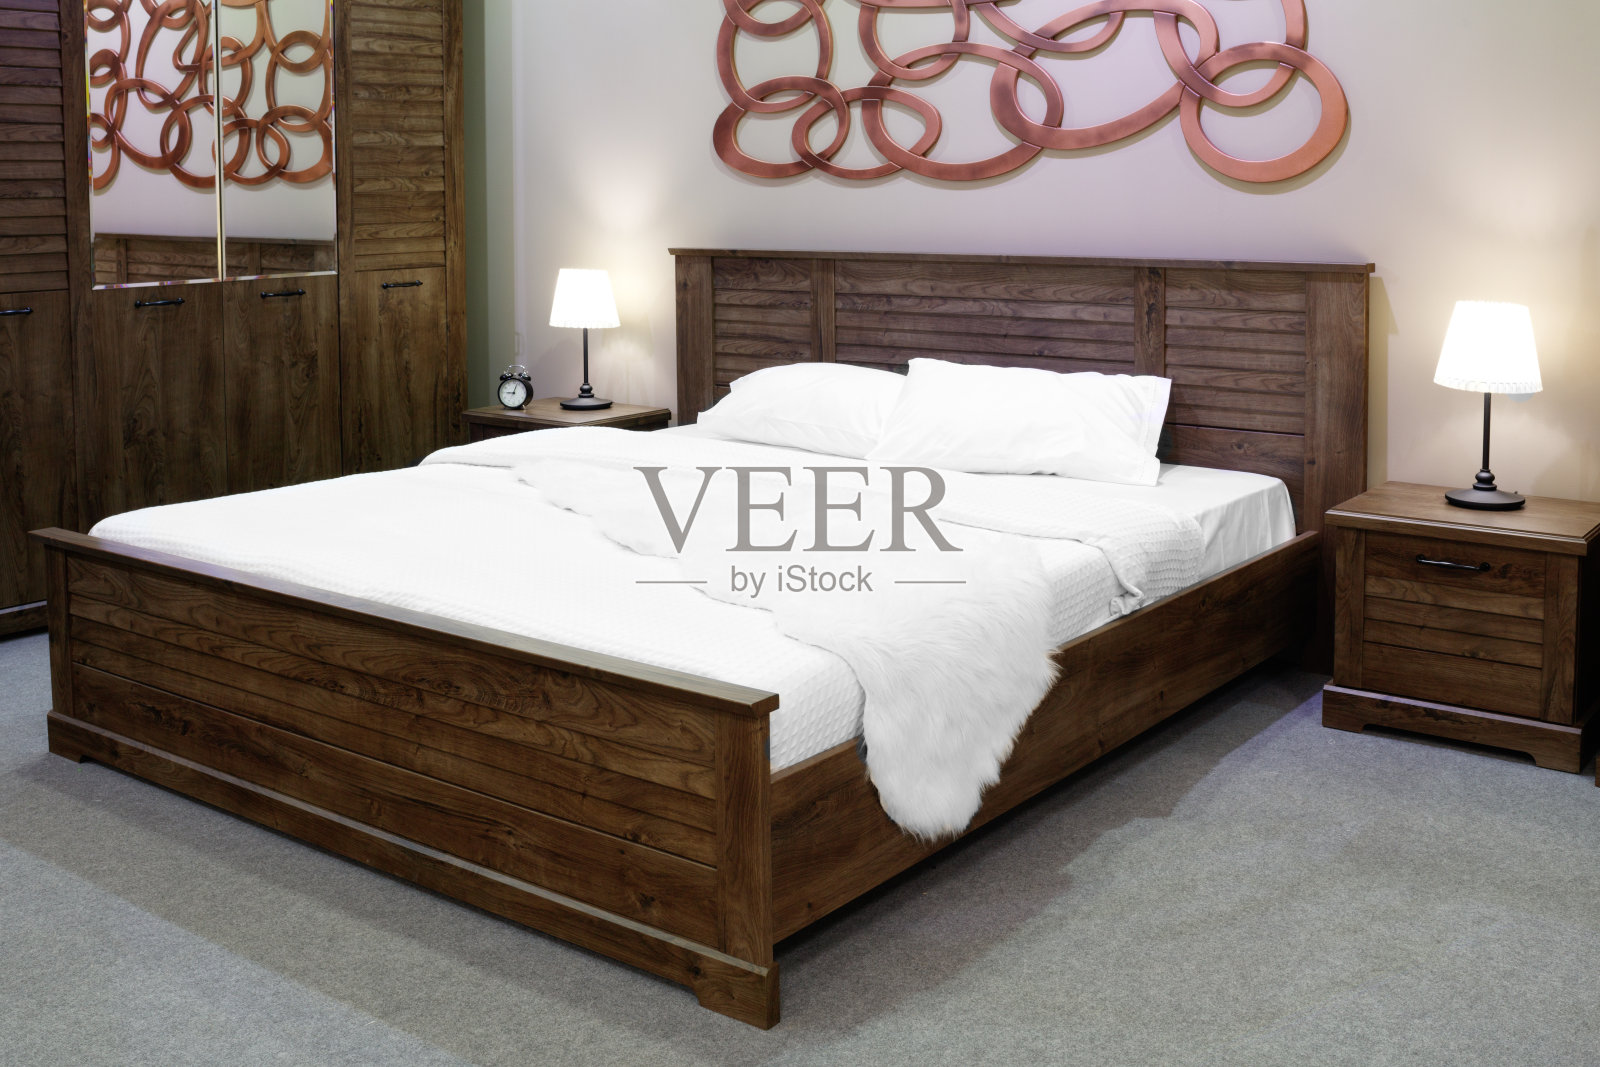 豪华现代和木制乡村风格的卧室在棕色和米色色调，酒店卧室的内部照片摄影图片